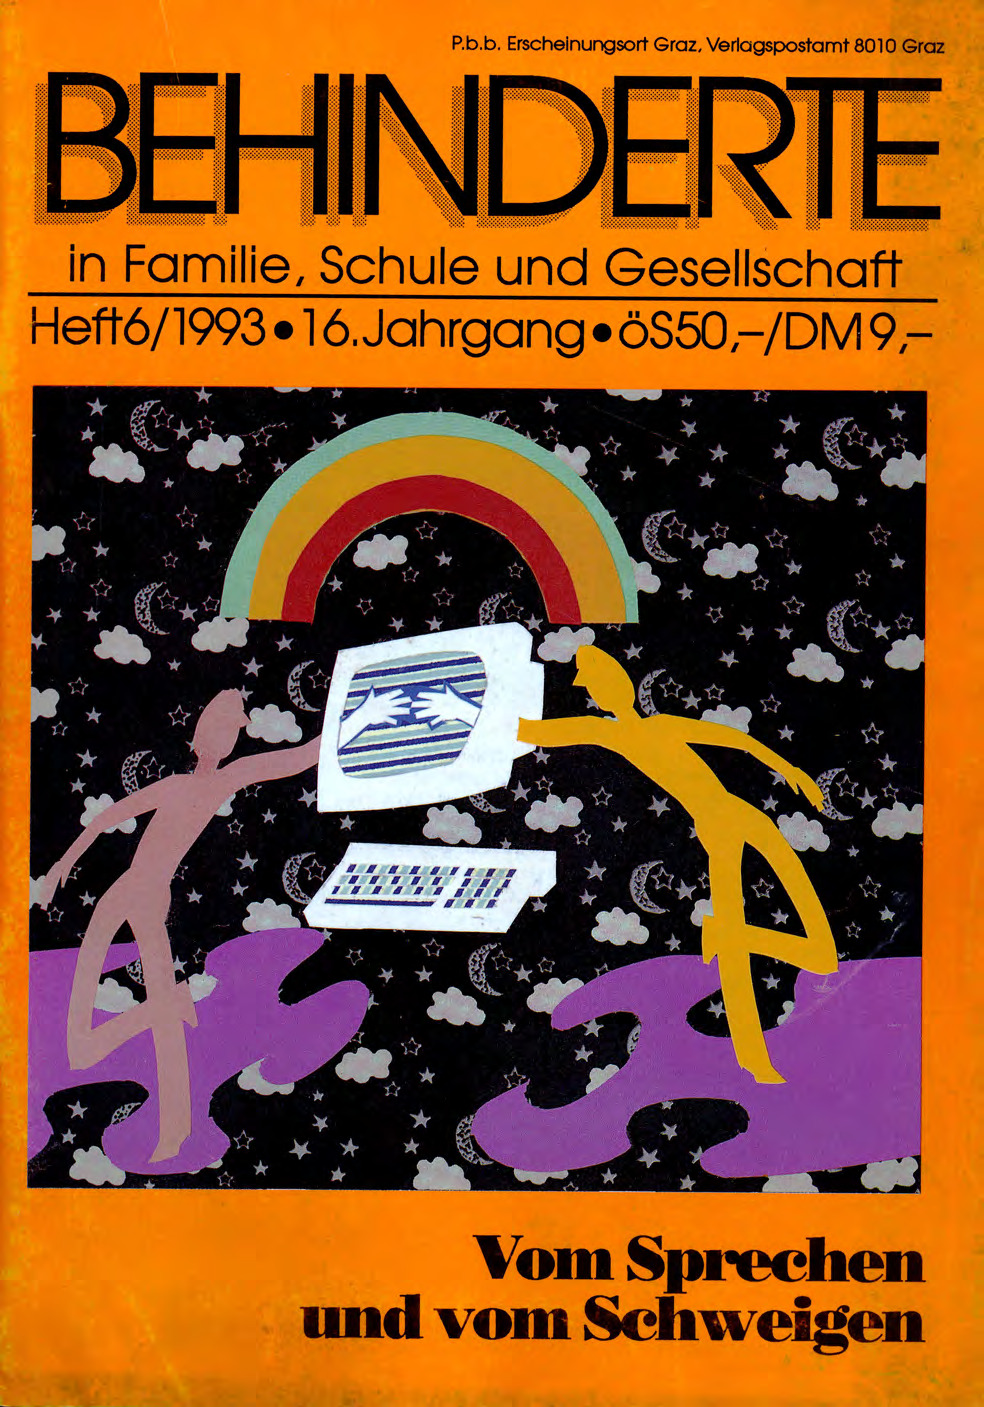 Titelbild der Zeitschrift BEHINDERTE MENSCHEN, Ausgabe 6/1993 "Vom Sprechen und vom Schweigen"